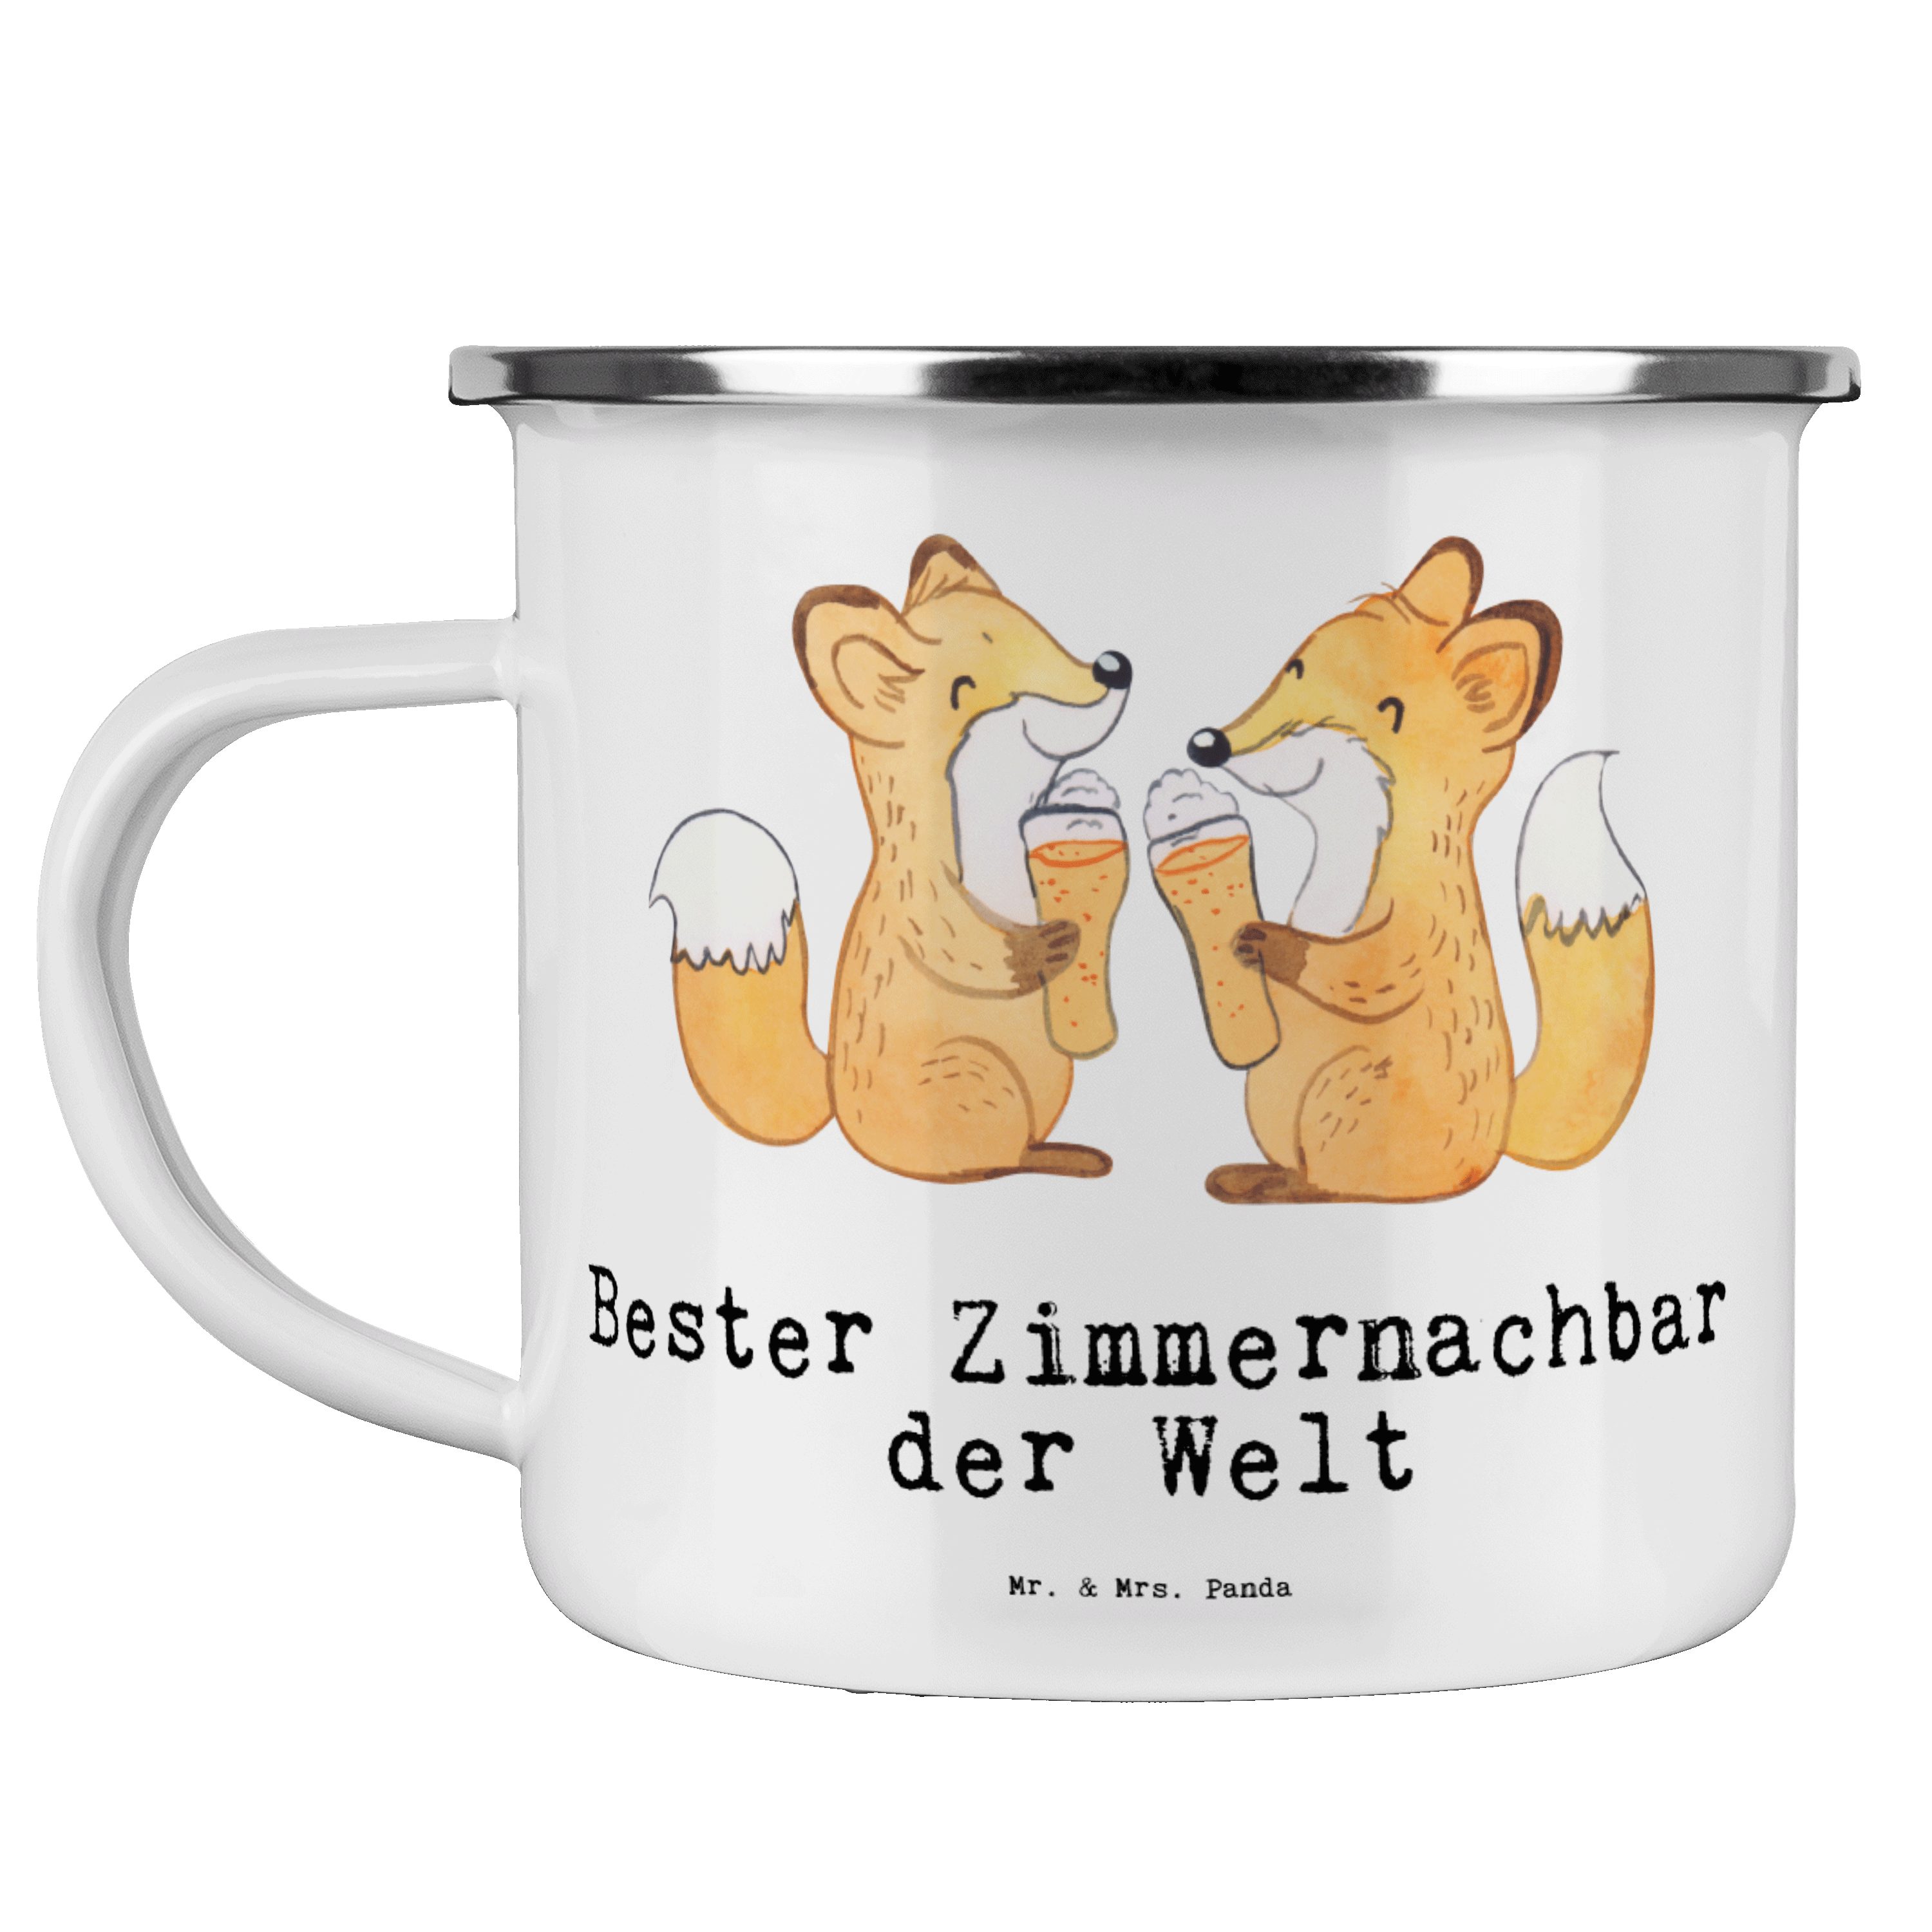 Emaille - & Becher Metalltasse, Geschenk, Bester - Panda E, Mrs. Welt der Weiß Mr. Fuchs Zimmernachbar